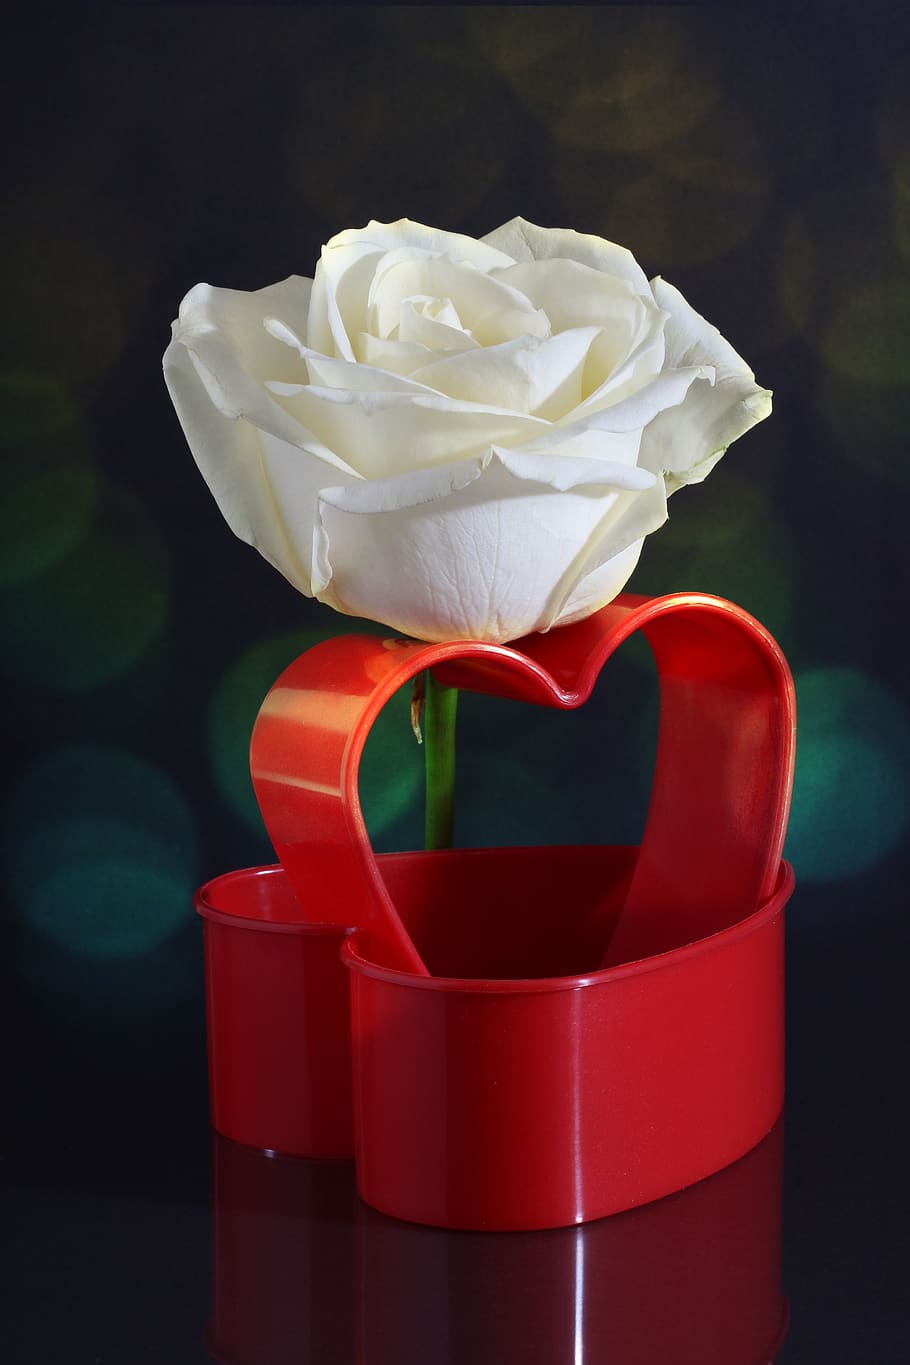 rose, white, heart, red, heart shape, love, affection, romantic, bokeh, light